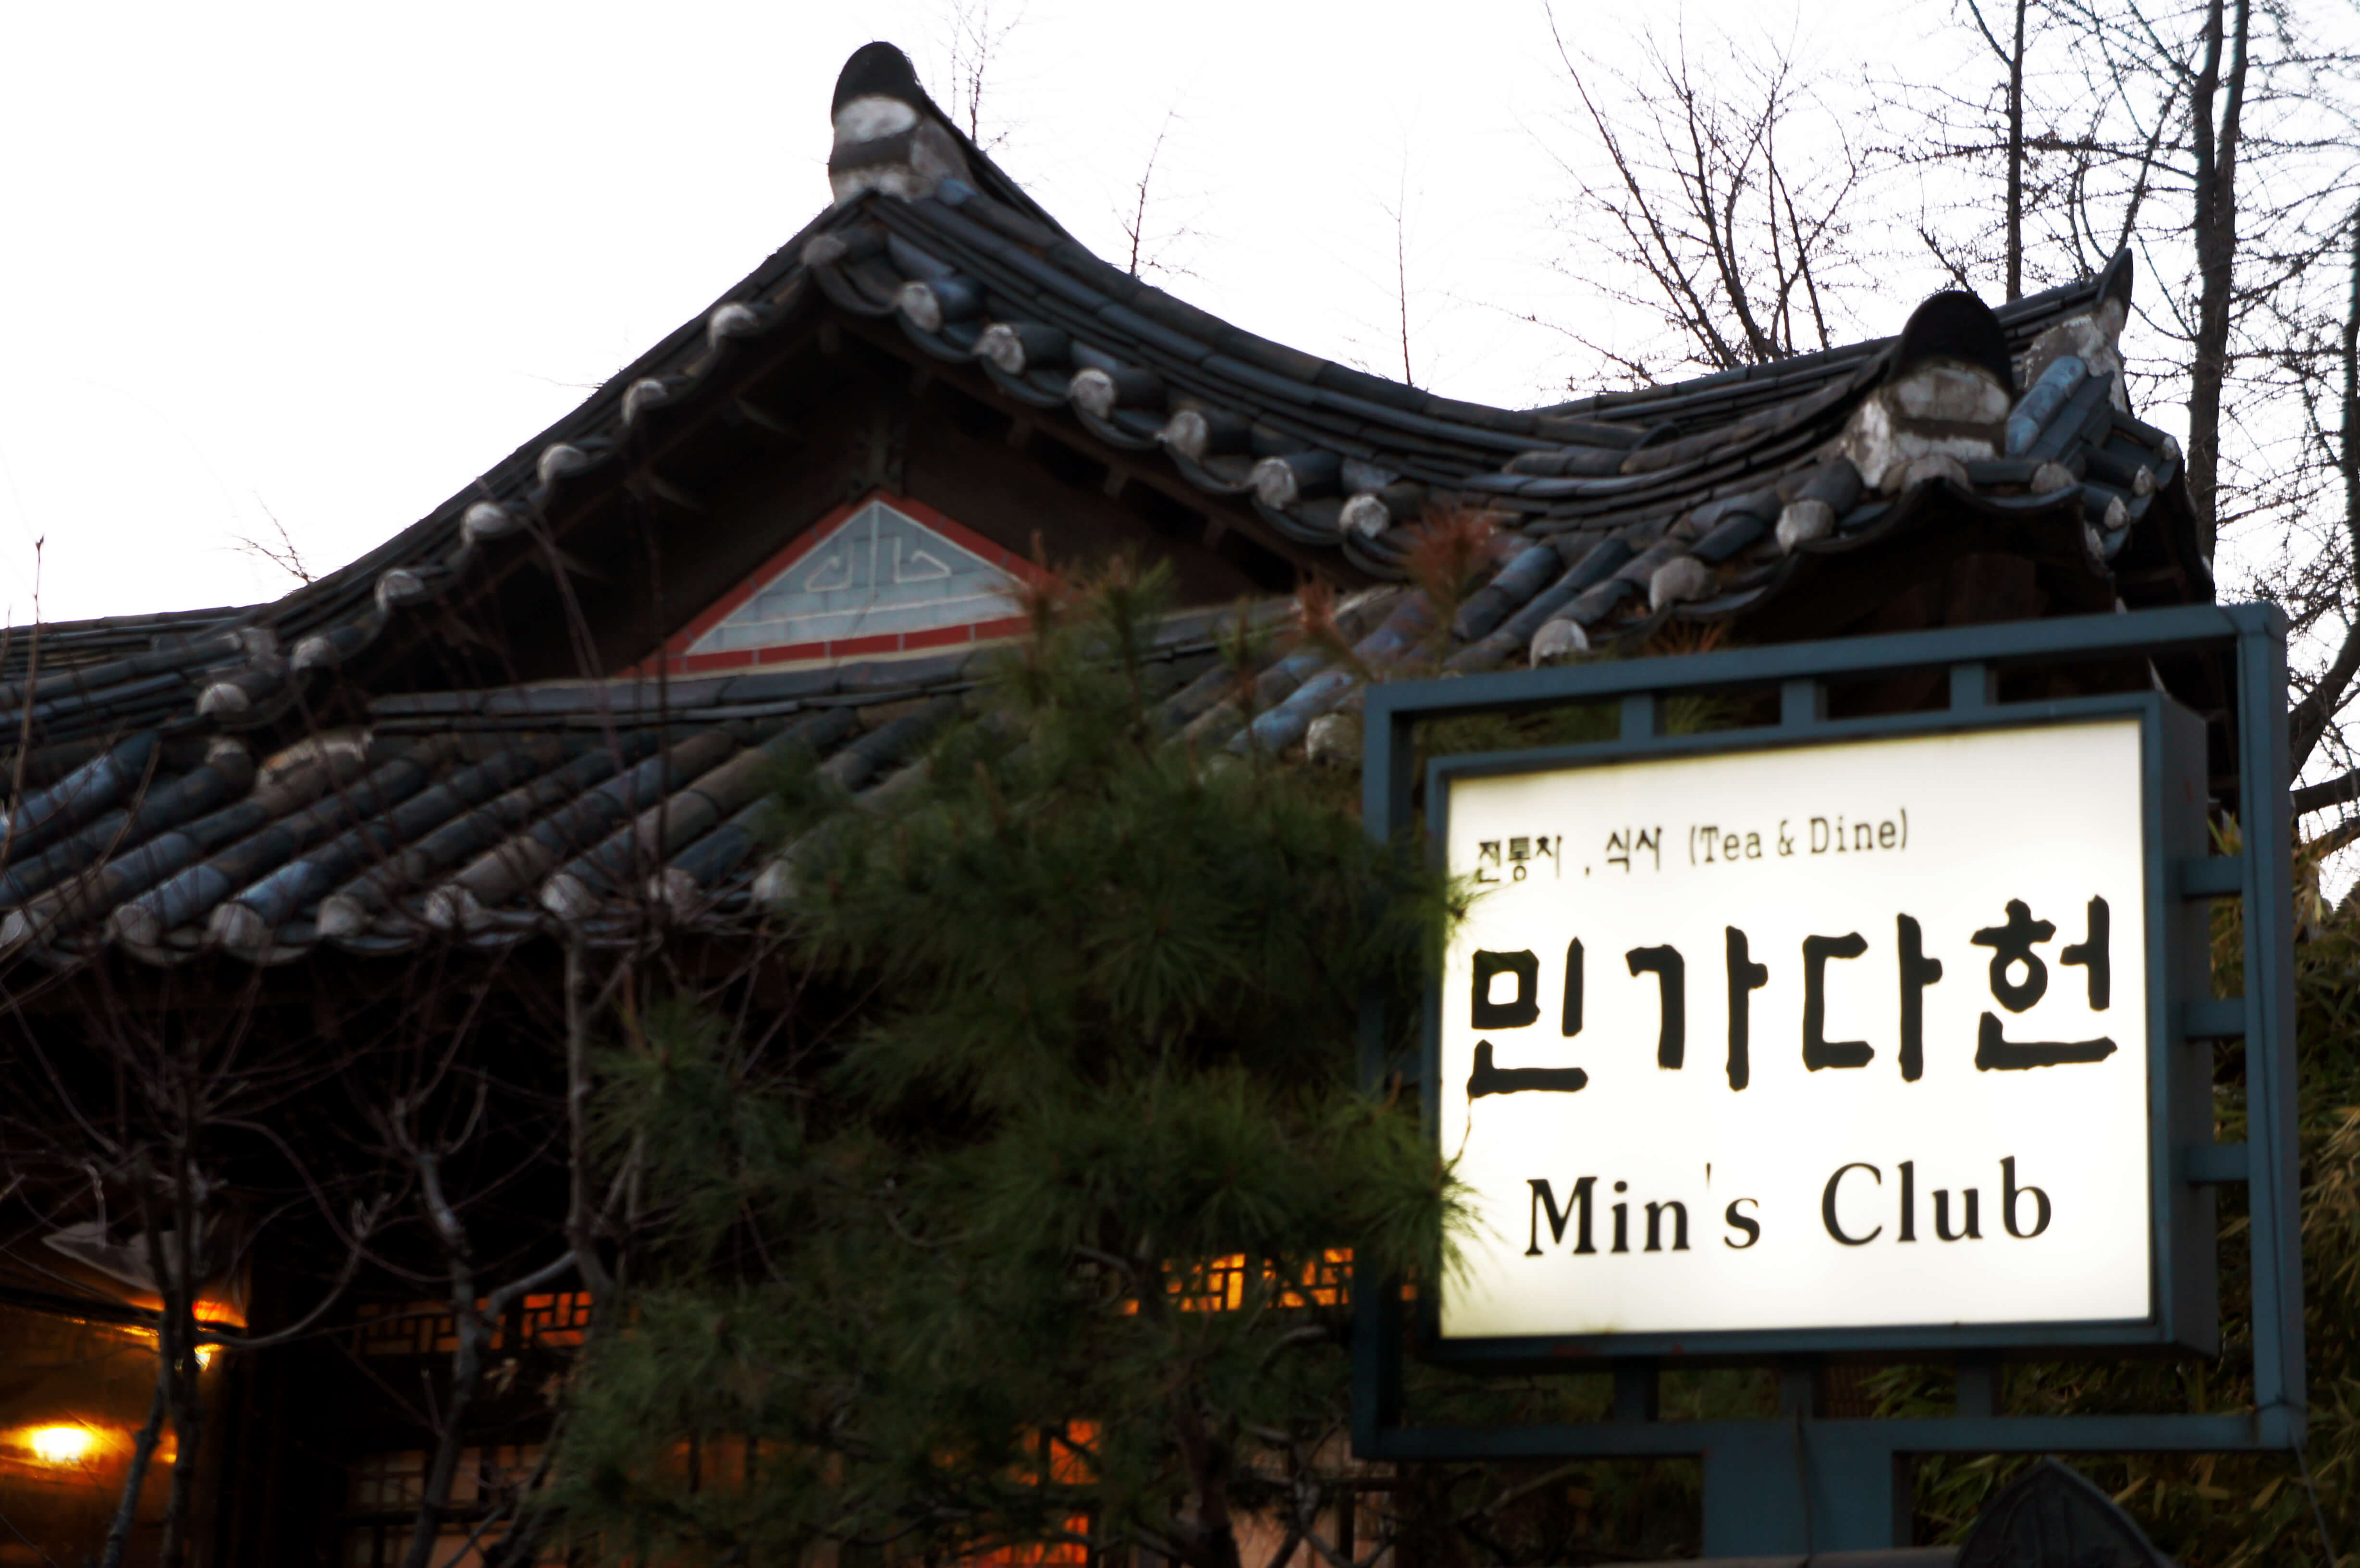 Min's Club